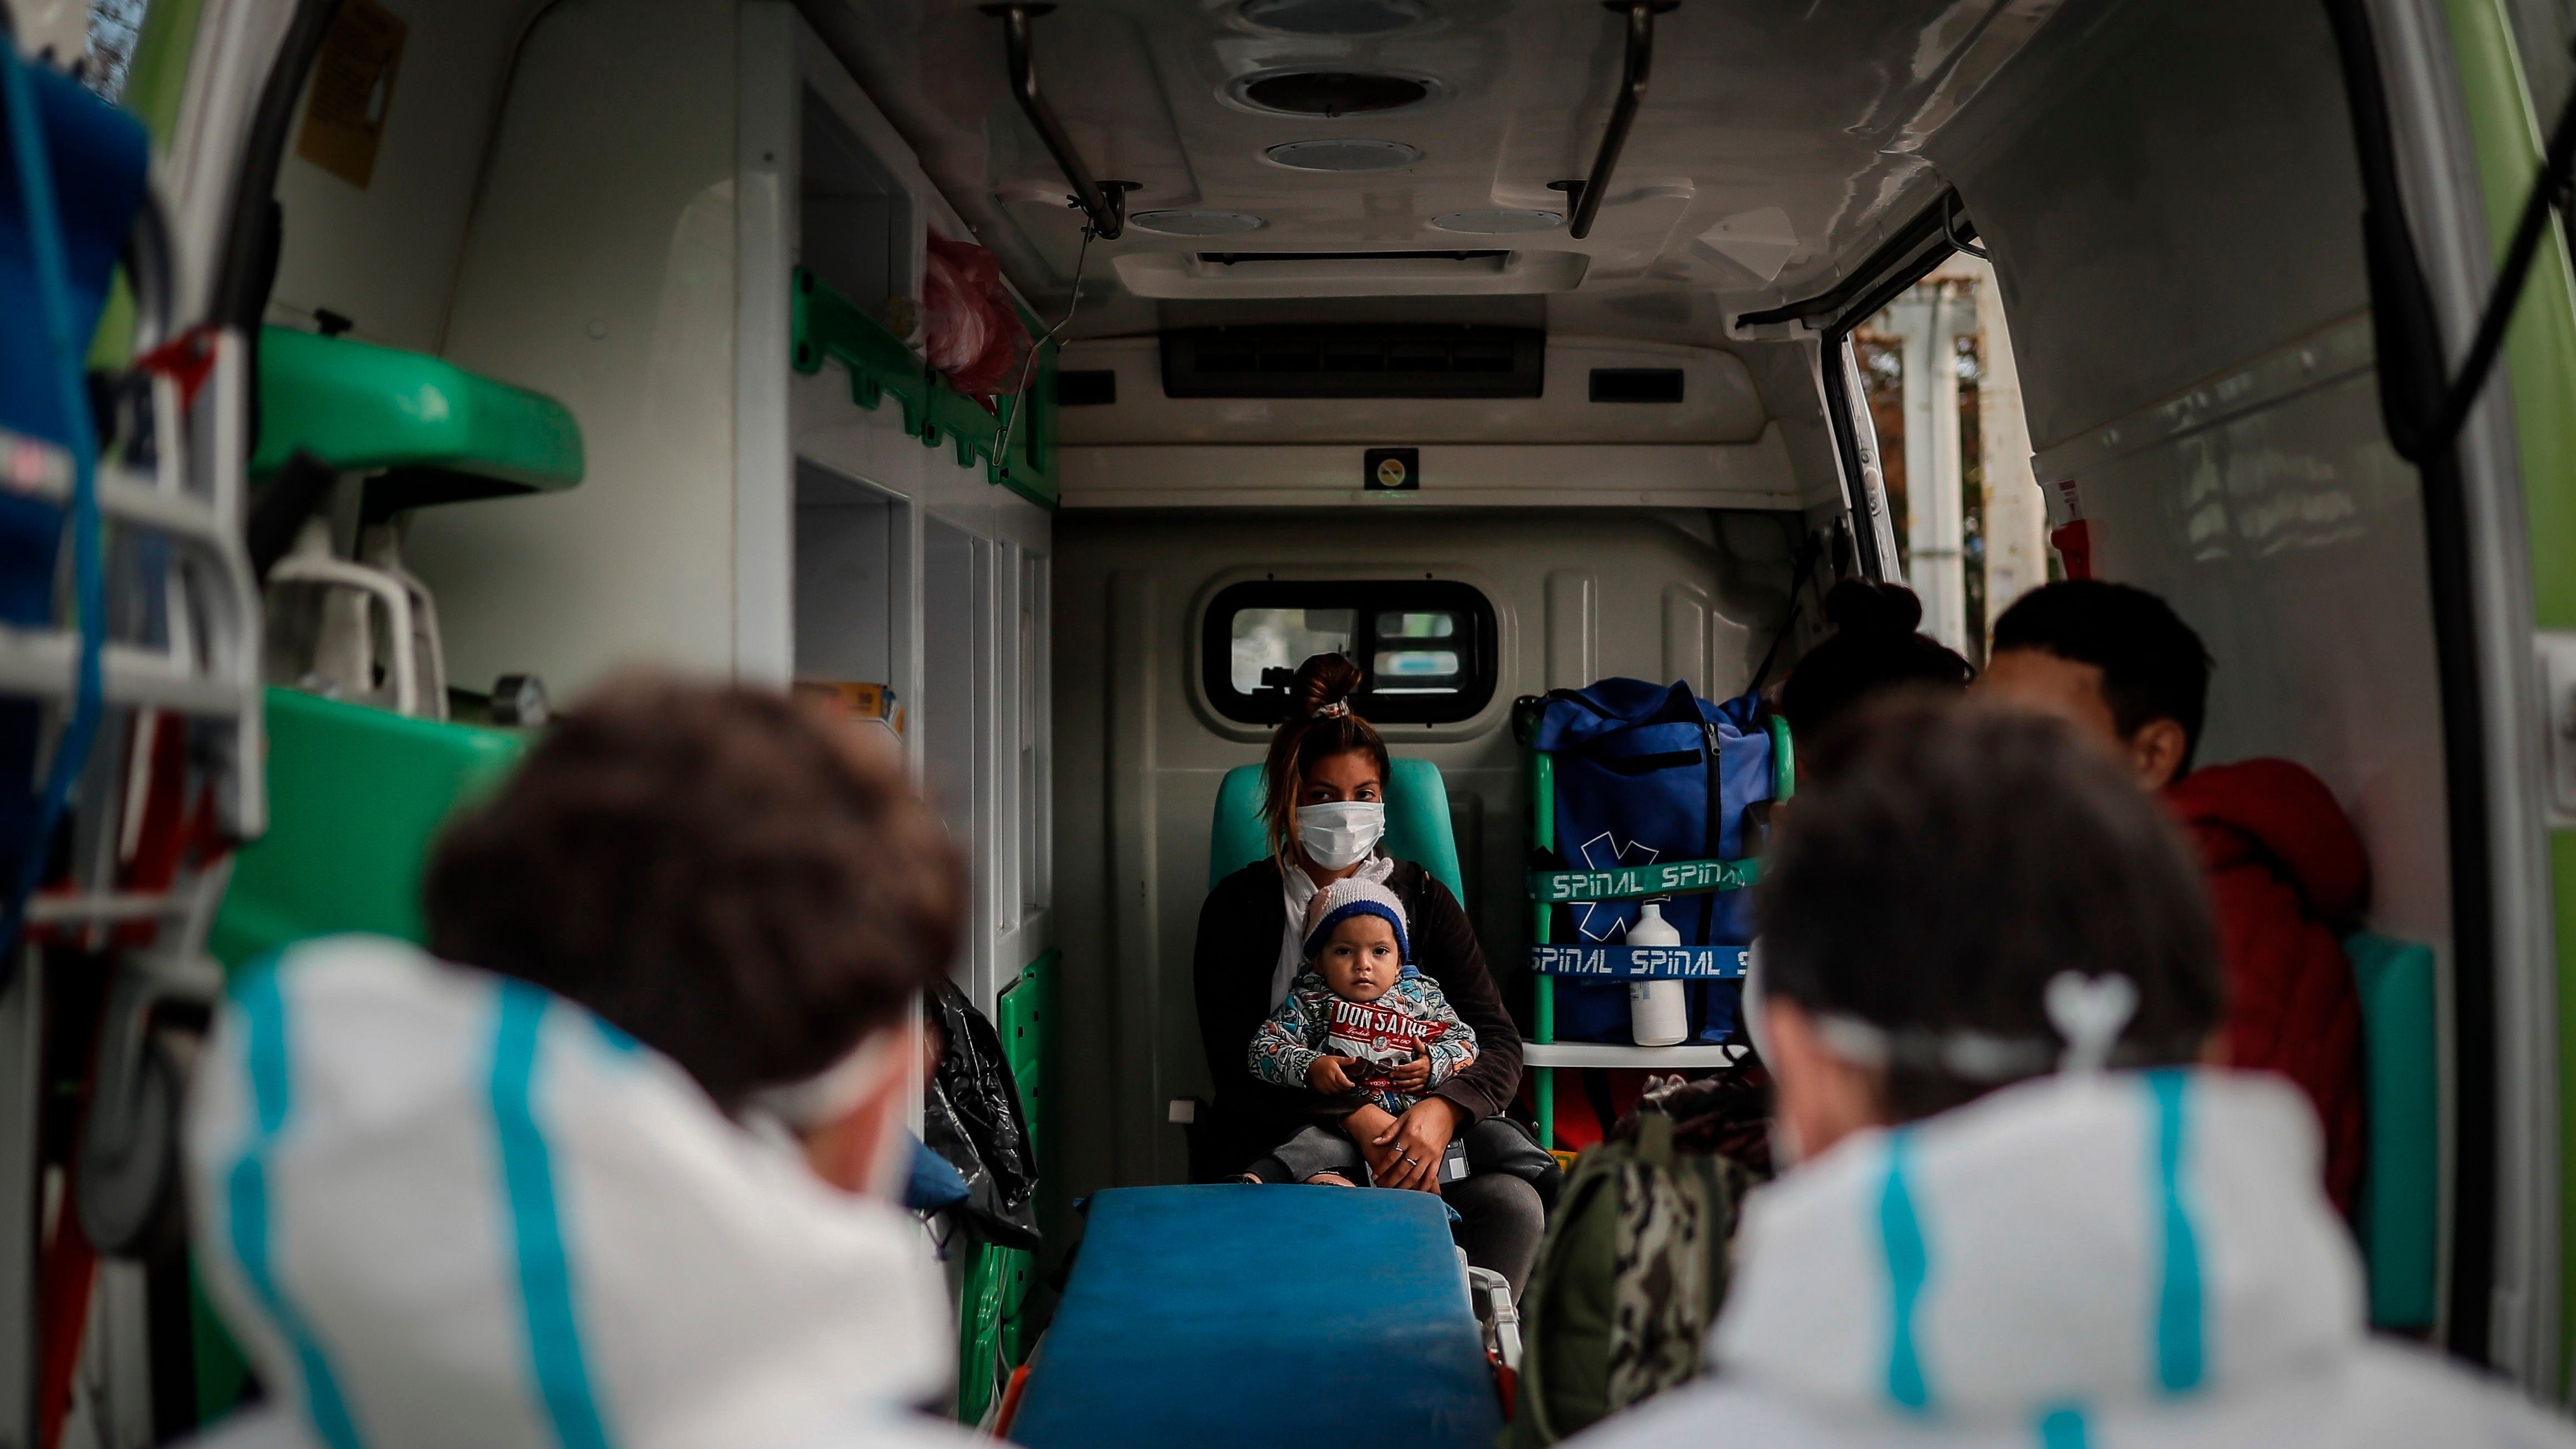 Servicios como los de Ambulancia son cubiertos por empresas agrupadas en las Asociaciones y Cámaras nucleadas en la Unión Argentina de Salud, que negoció con el gobierno (EFE/Juan Ignacio Roncoroni)
